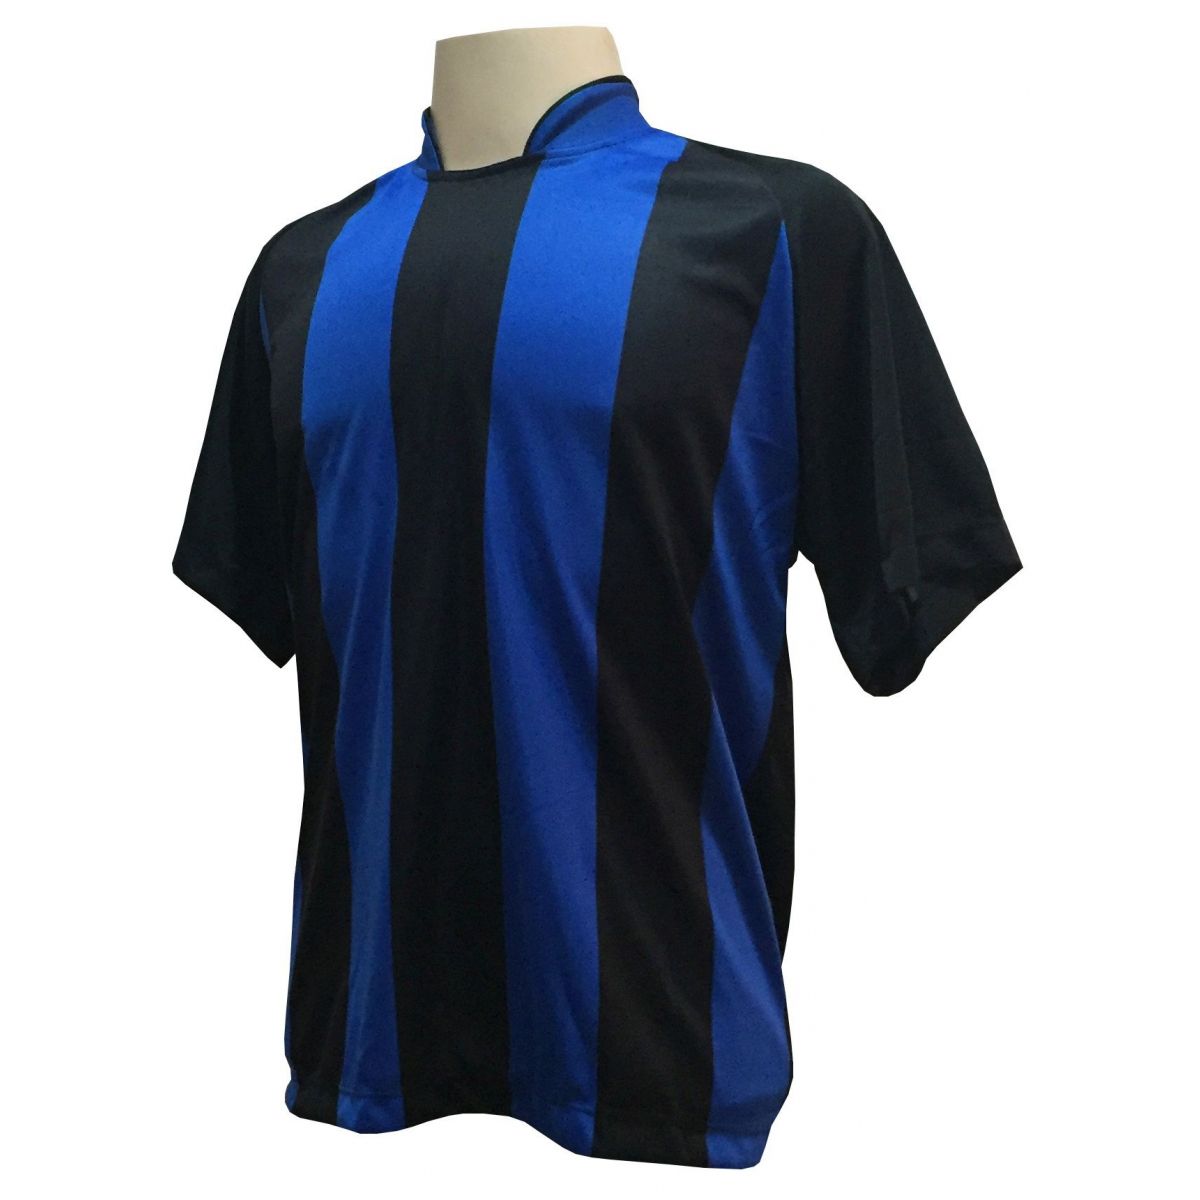 Uniforme Esportivo com 18 camisas modelo Milan Preto/Royal + 18 calções modelo Madrid Preto + Brindes